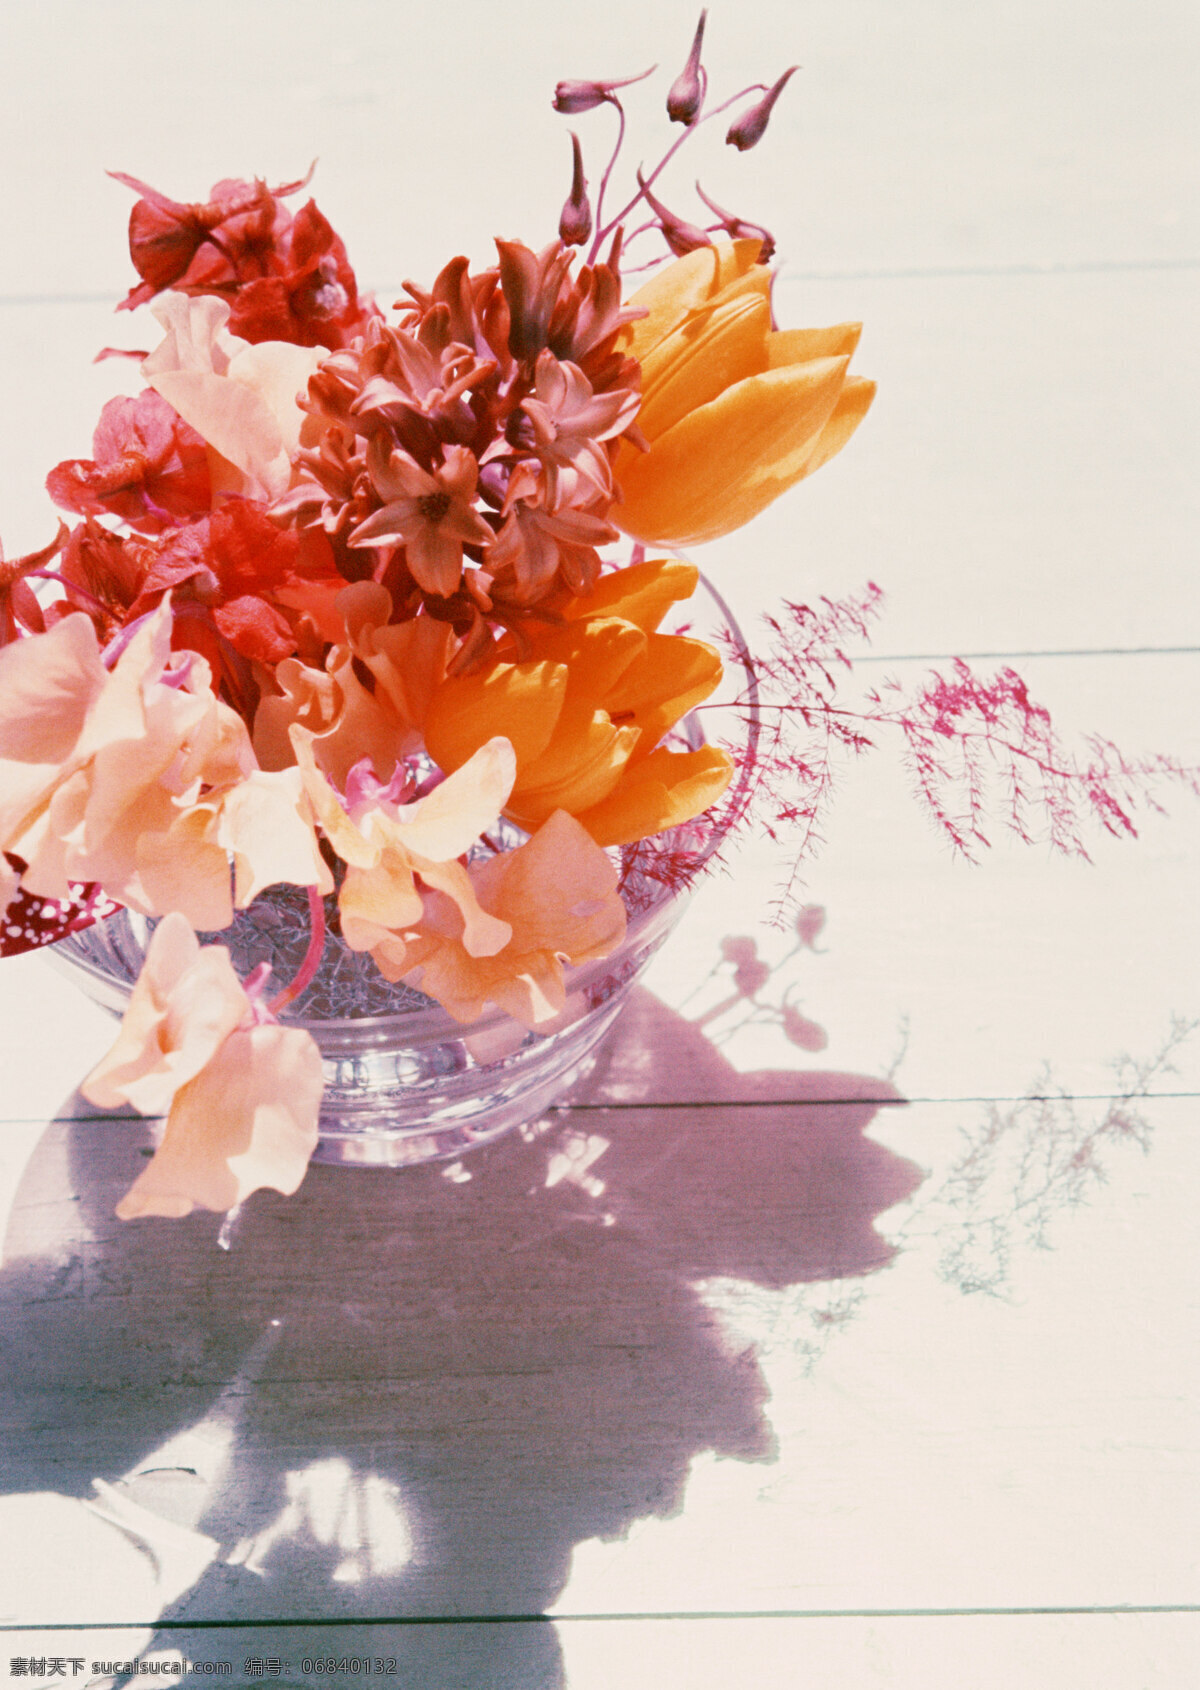 花卉摄影 插花 阳光 暖色 花朵 生物世界 花草